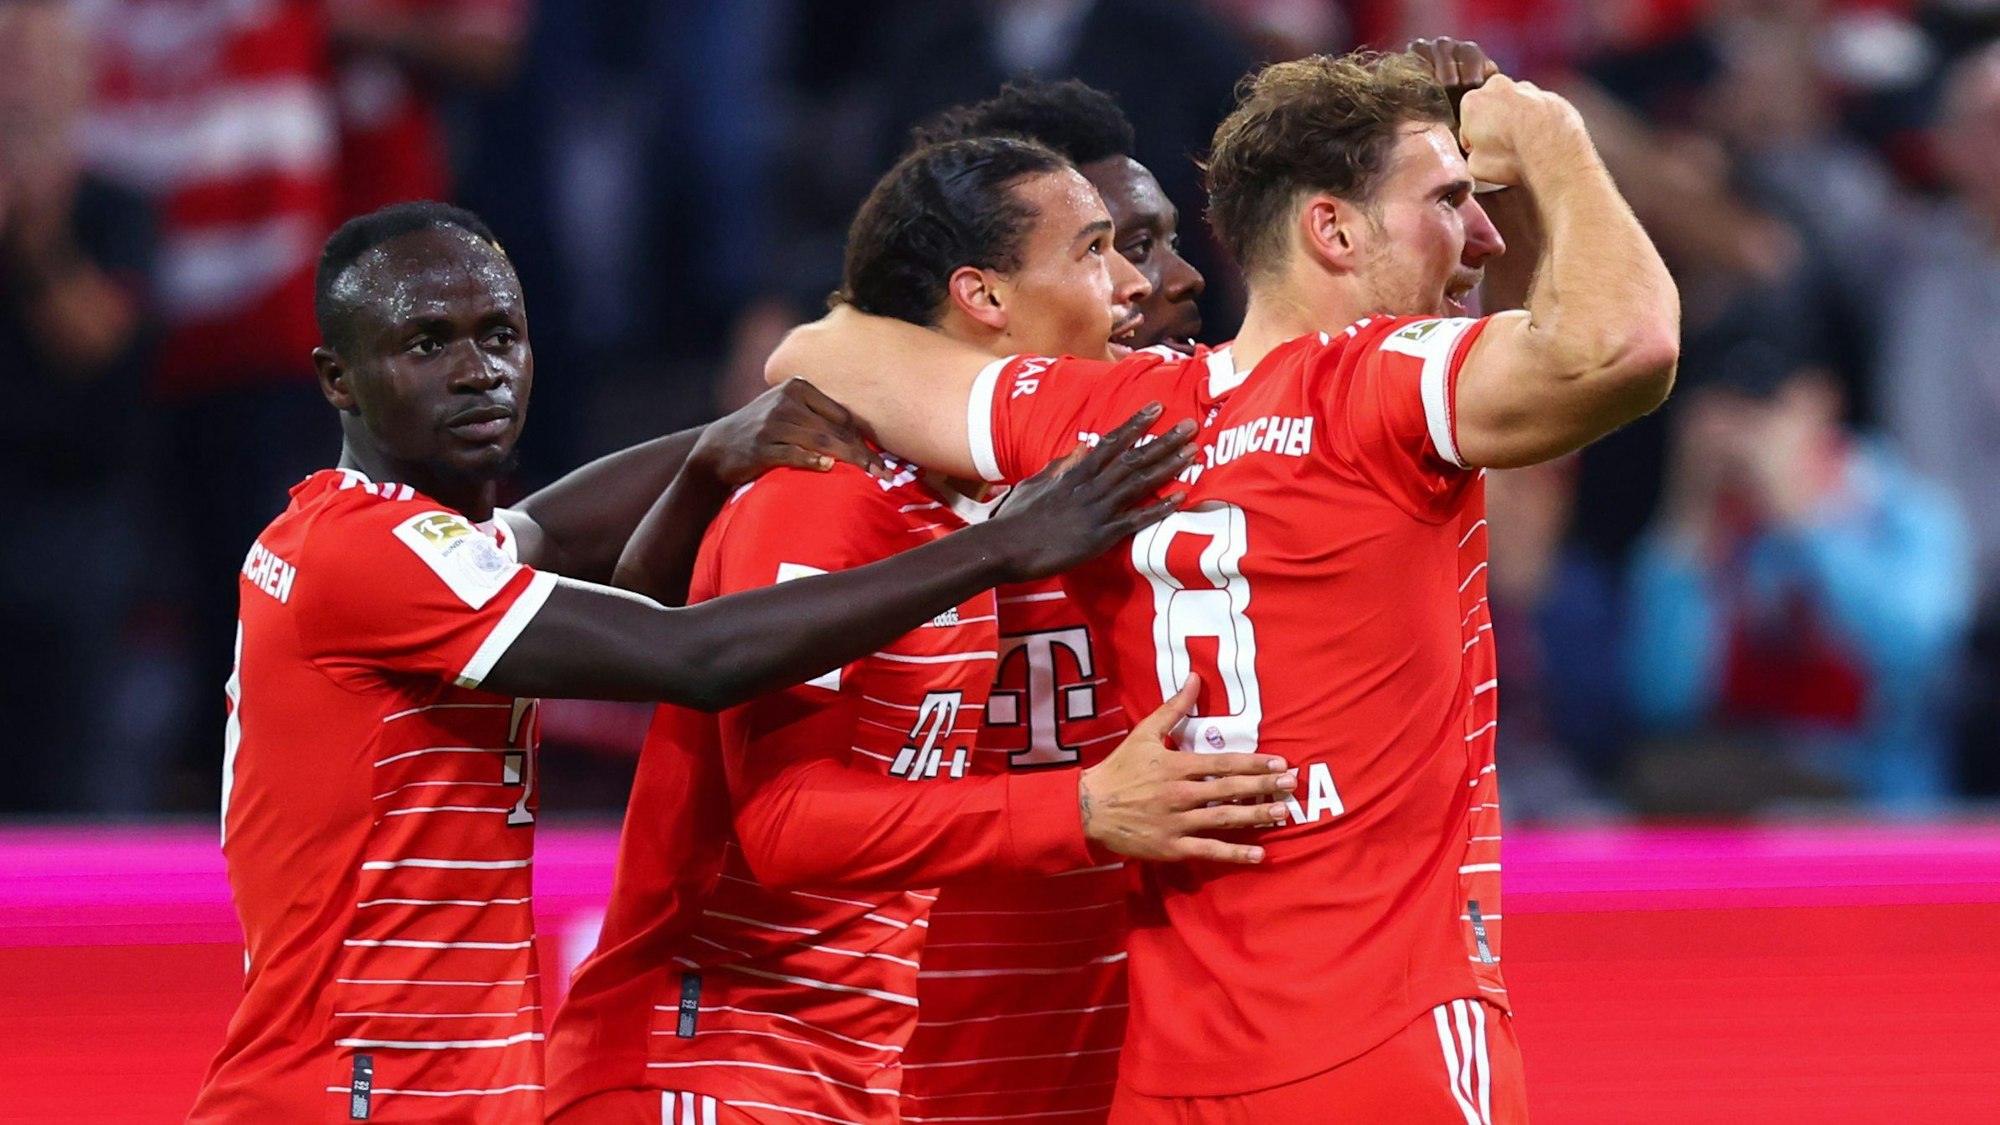 Die Stars des FC Bayern München jubeln über ein Tor in der Bundesliga gegen den SC Freiburg.